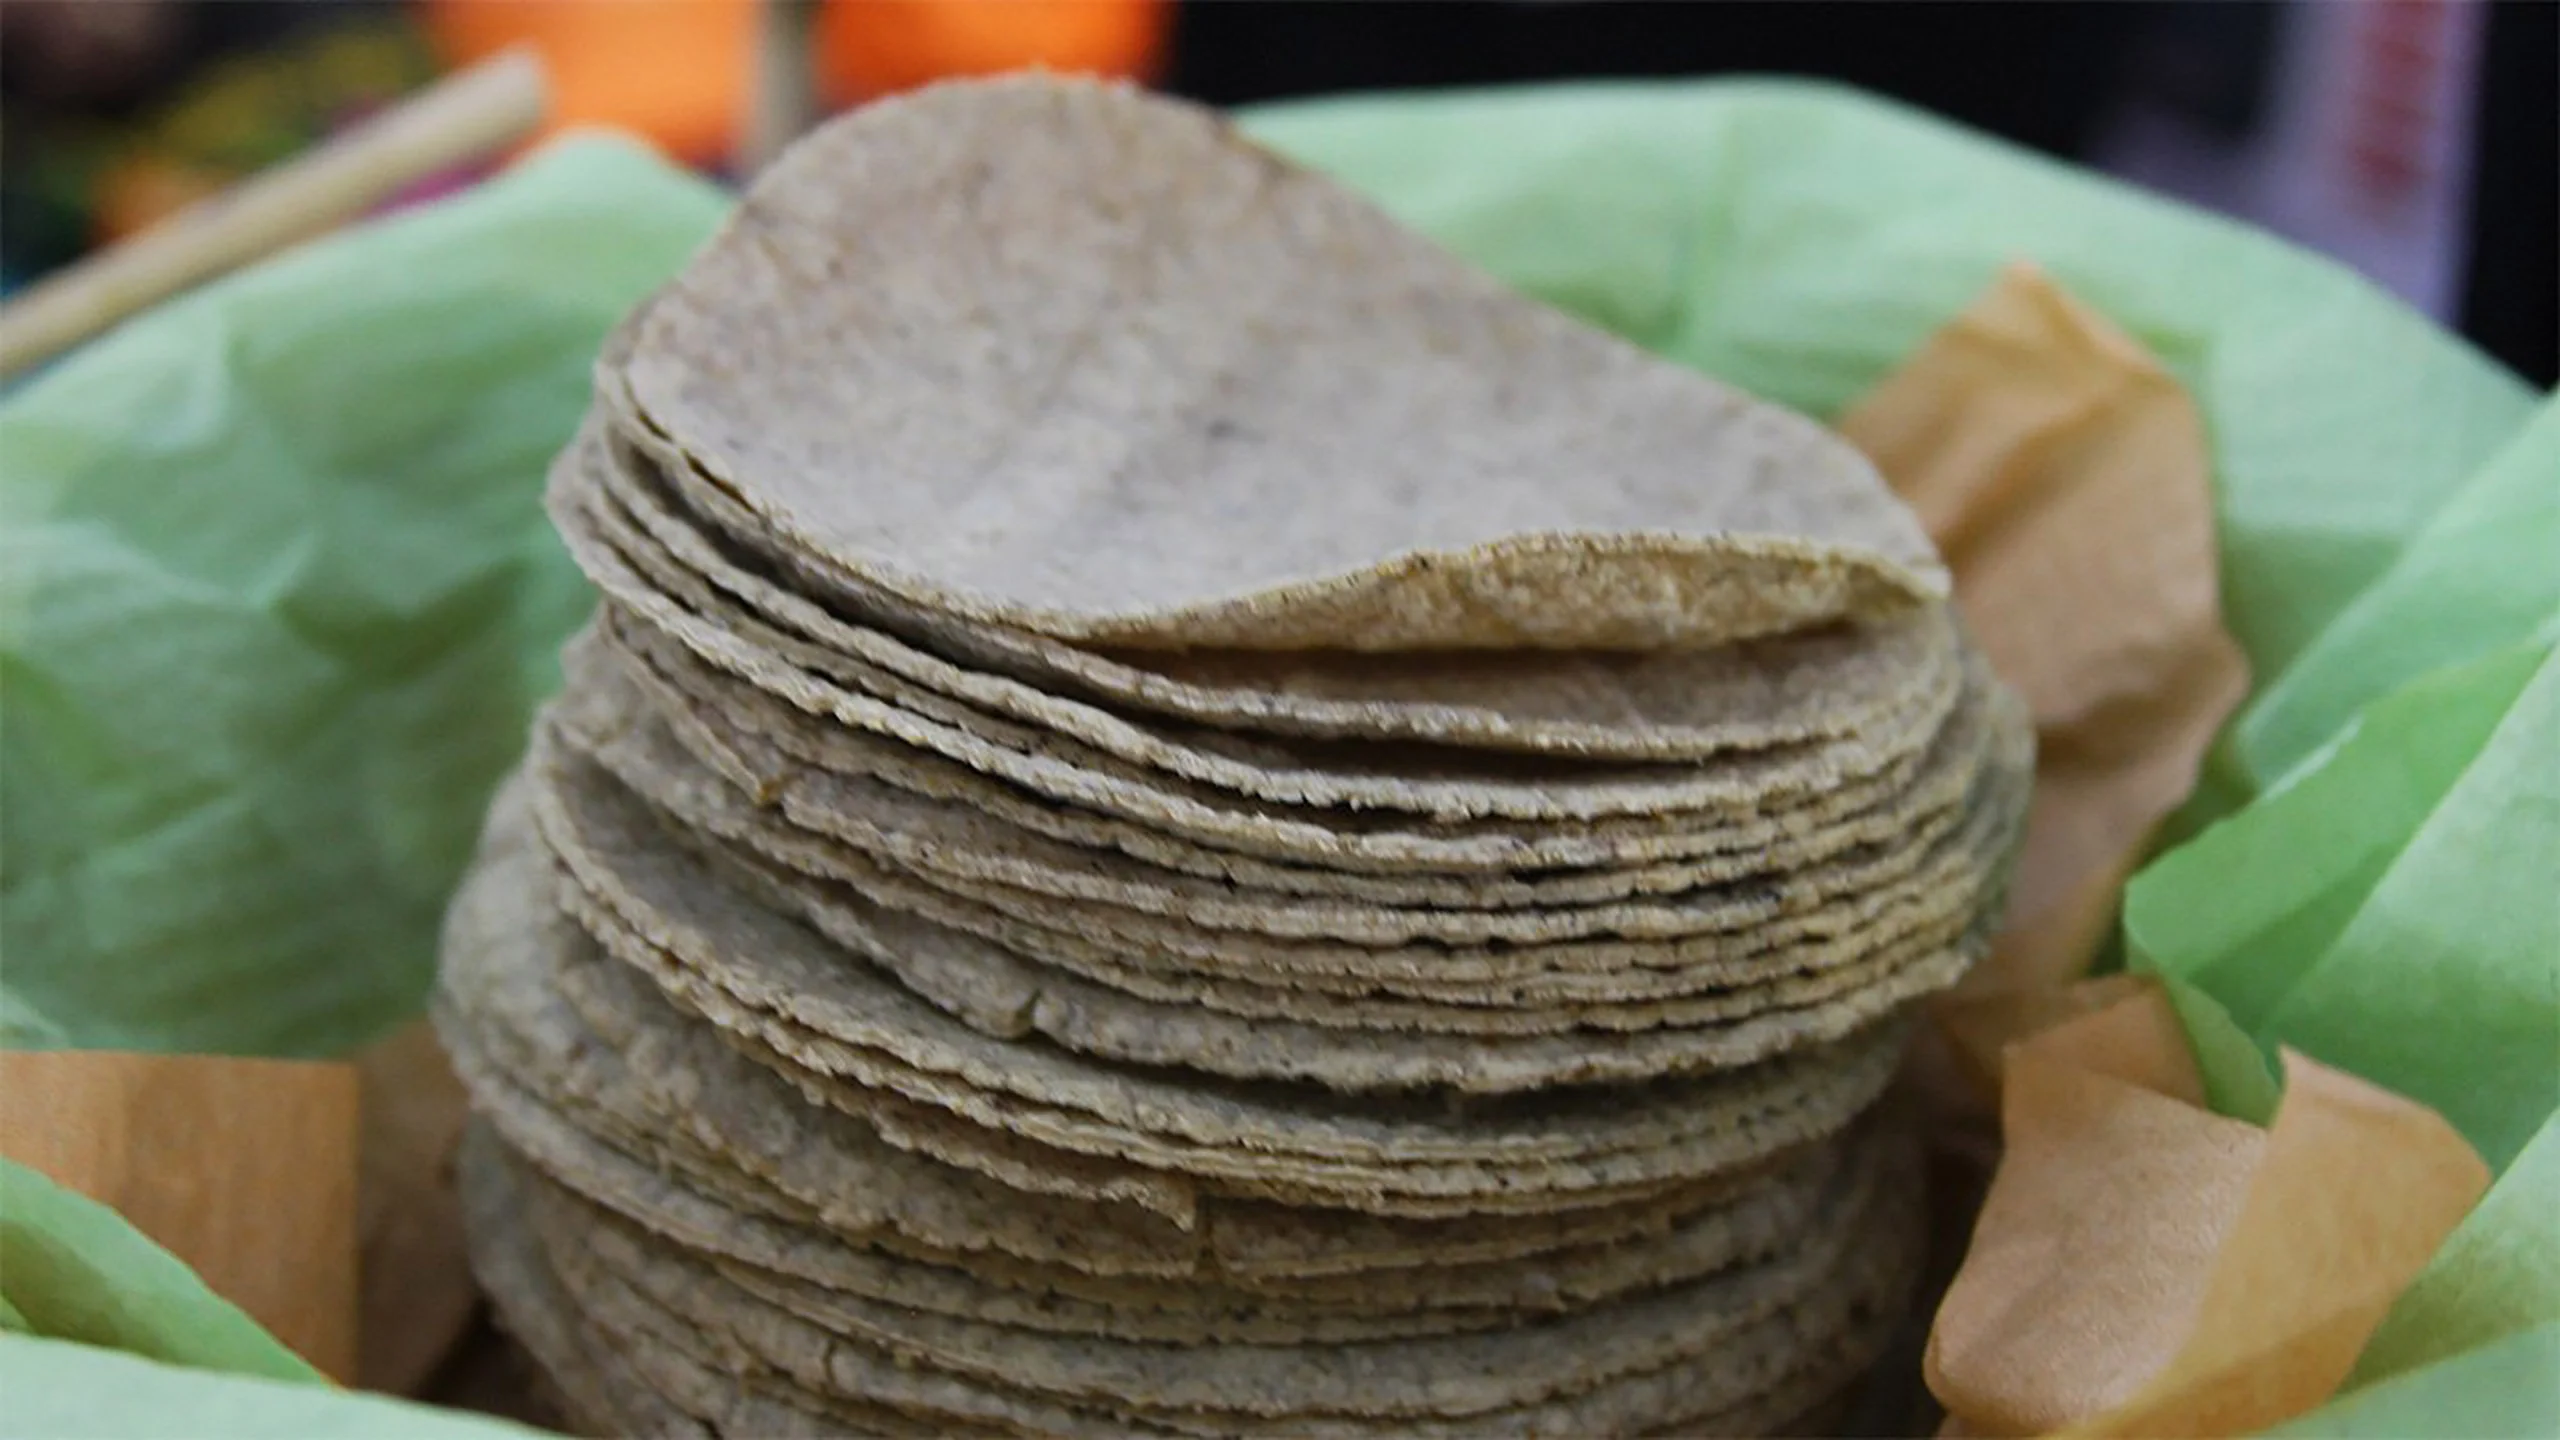 El kilo de tortillas podría costar 60 pesos en México